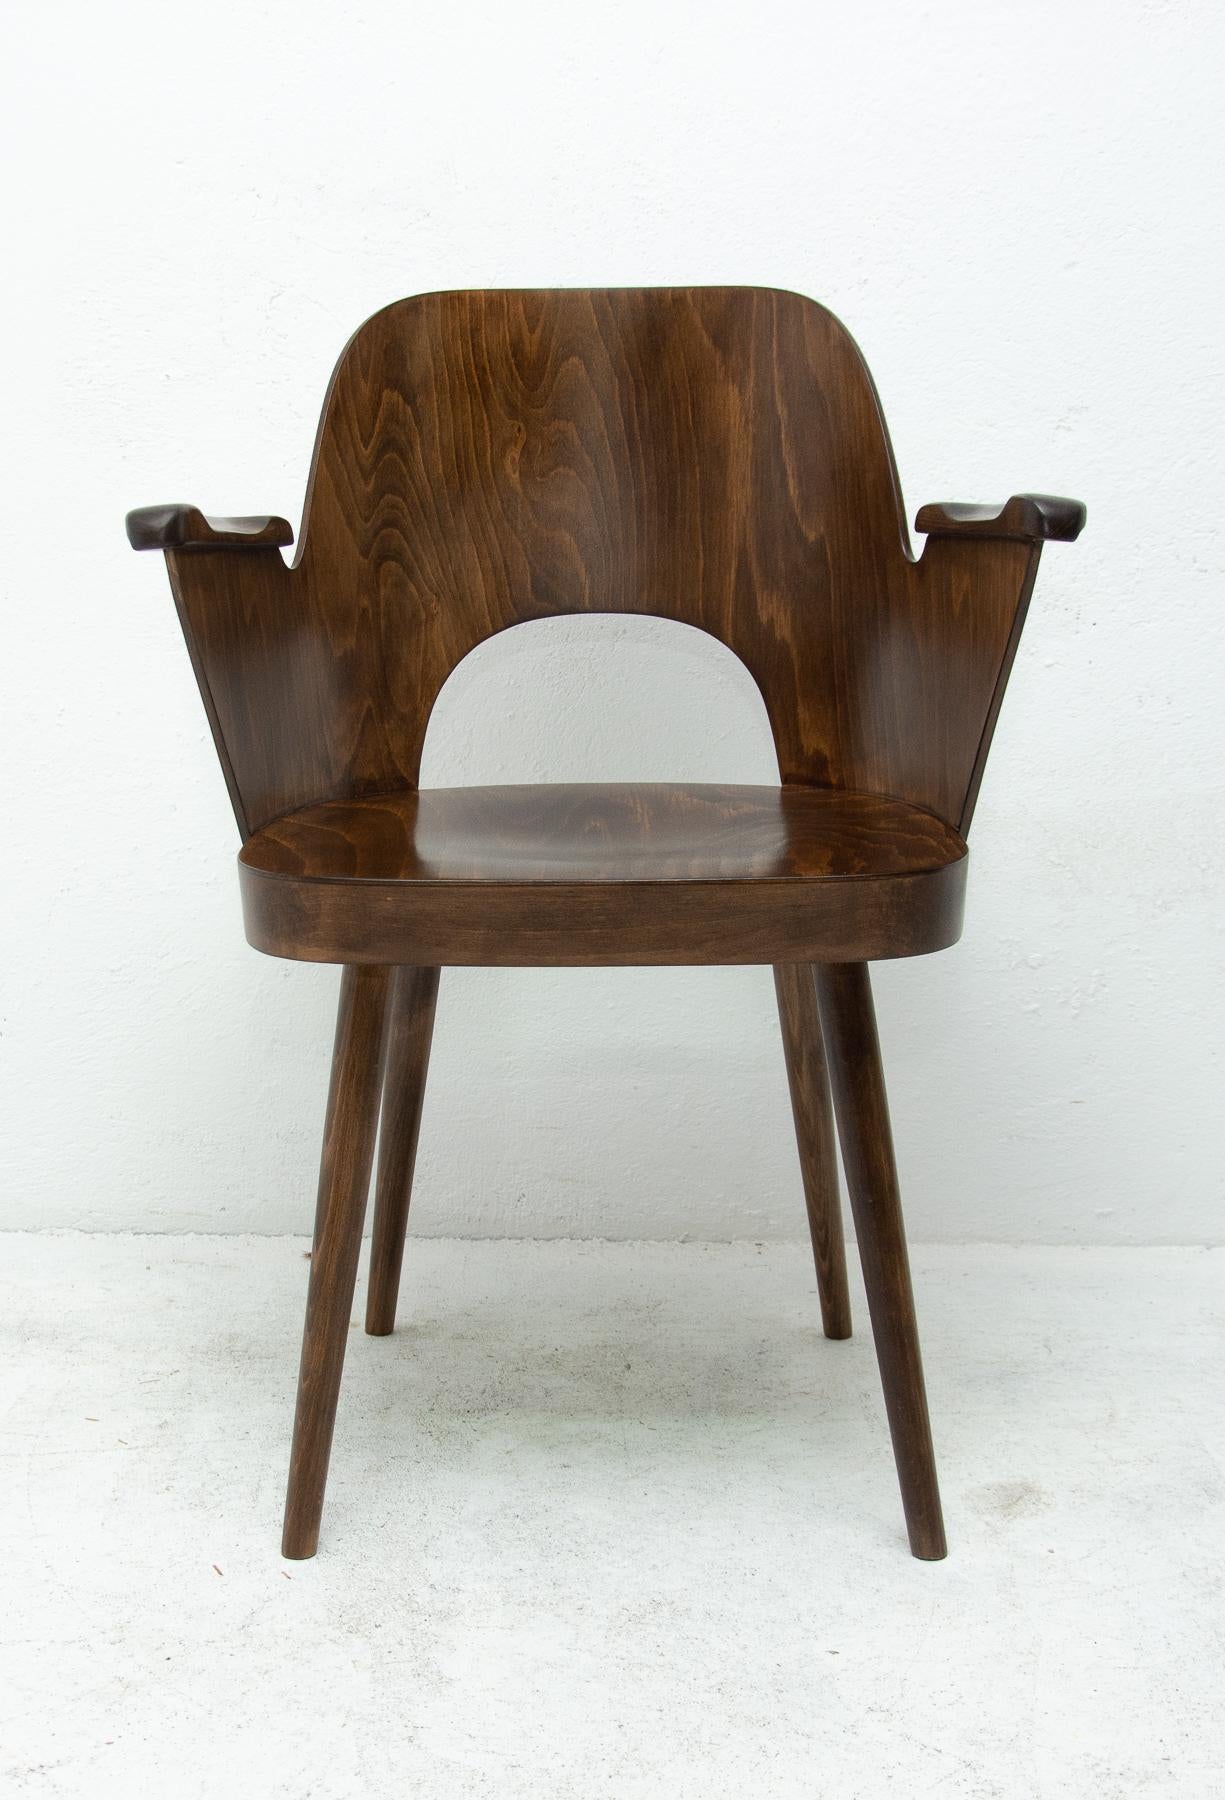 Dieser Sessel wurde von dem tschechoslowakischen Architekten Radomír Hofman für die Firma TON Bystrice pod Hostýnem in den 1960er Jahren entworfen.

Die Stühle sind aus dunklem, gebogenem Buchenholz und Sperrholz gefertigt.

In sehr gutem